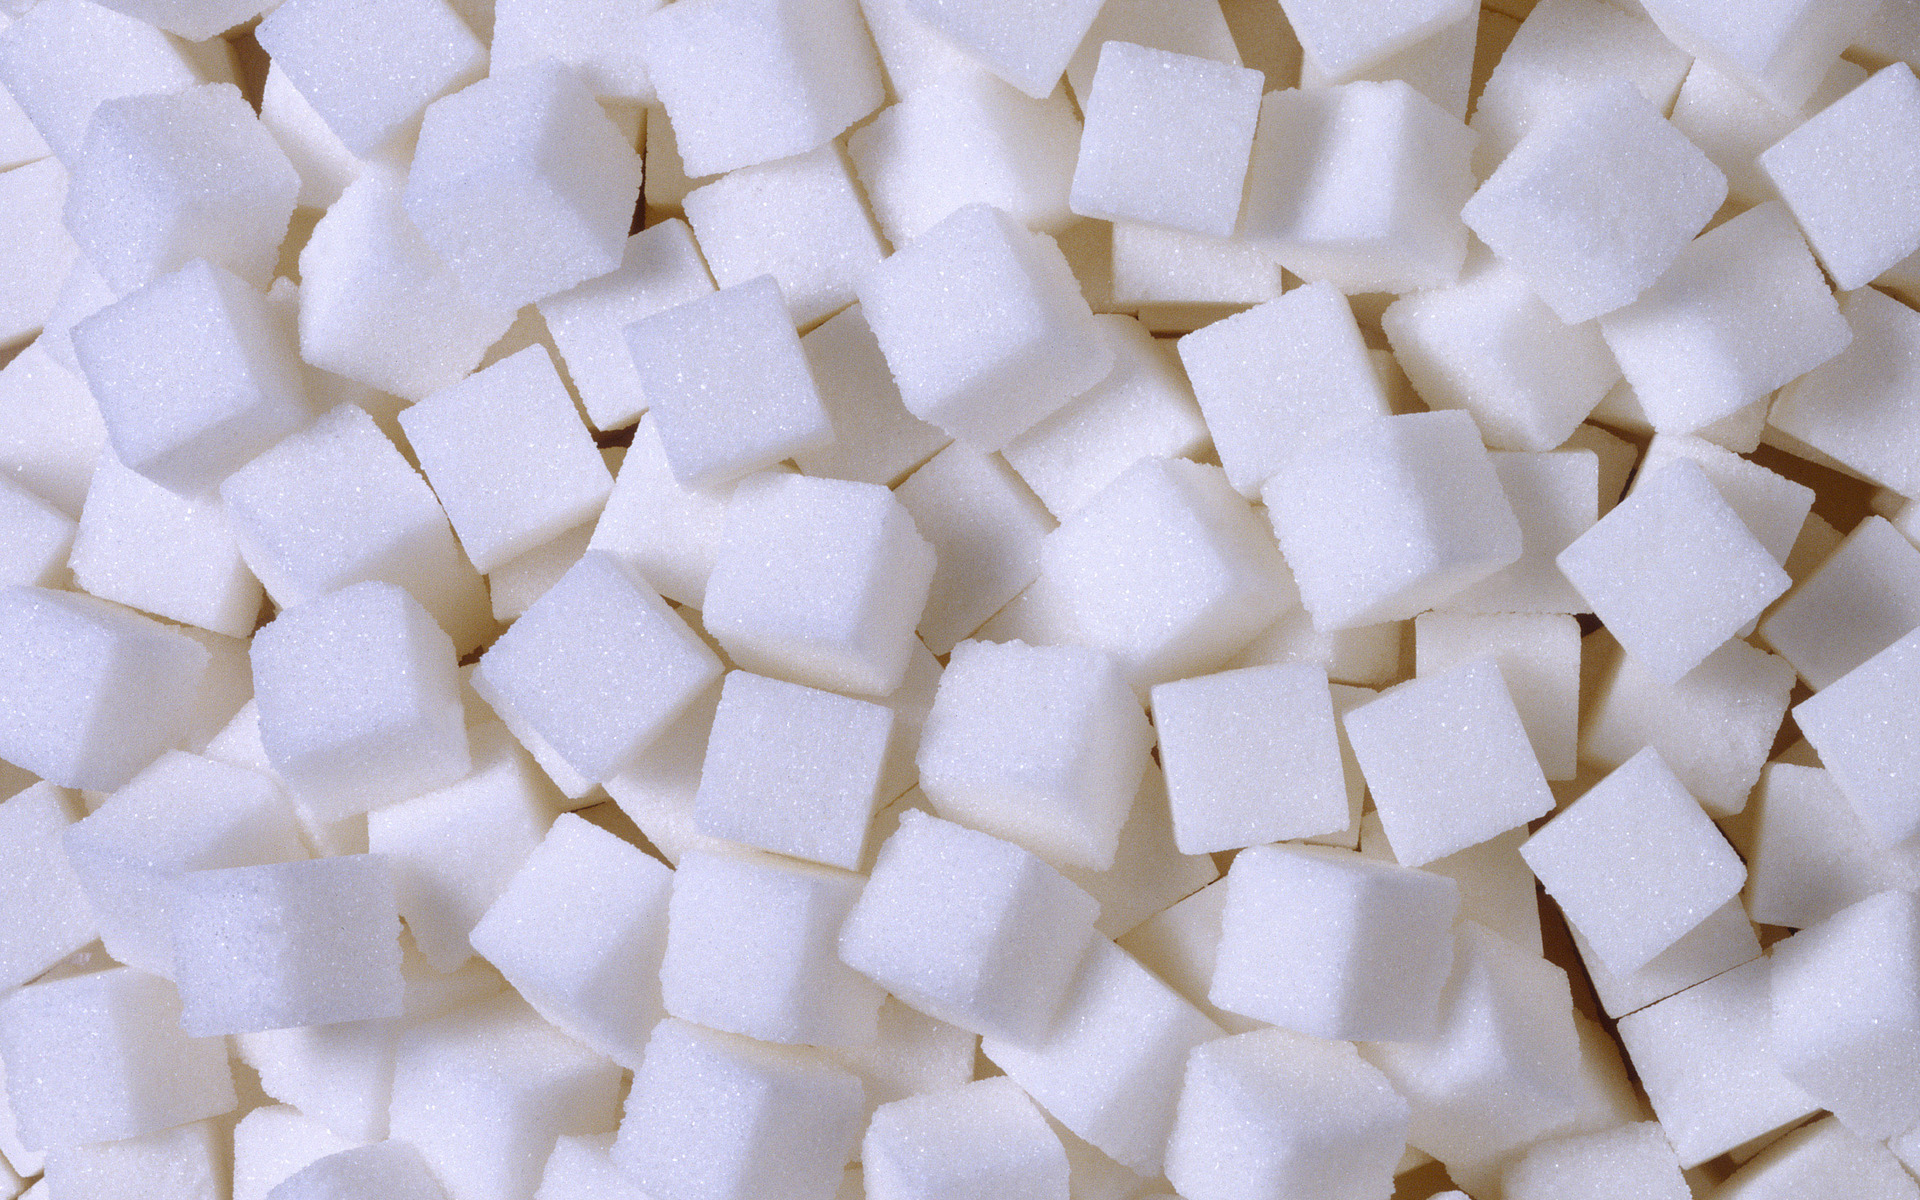 Казахстан ввел льготы на сахар из-за повышения цен на российскую продукцию - Минфин  